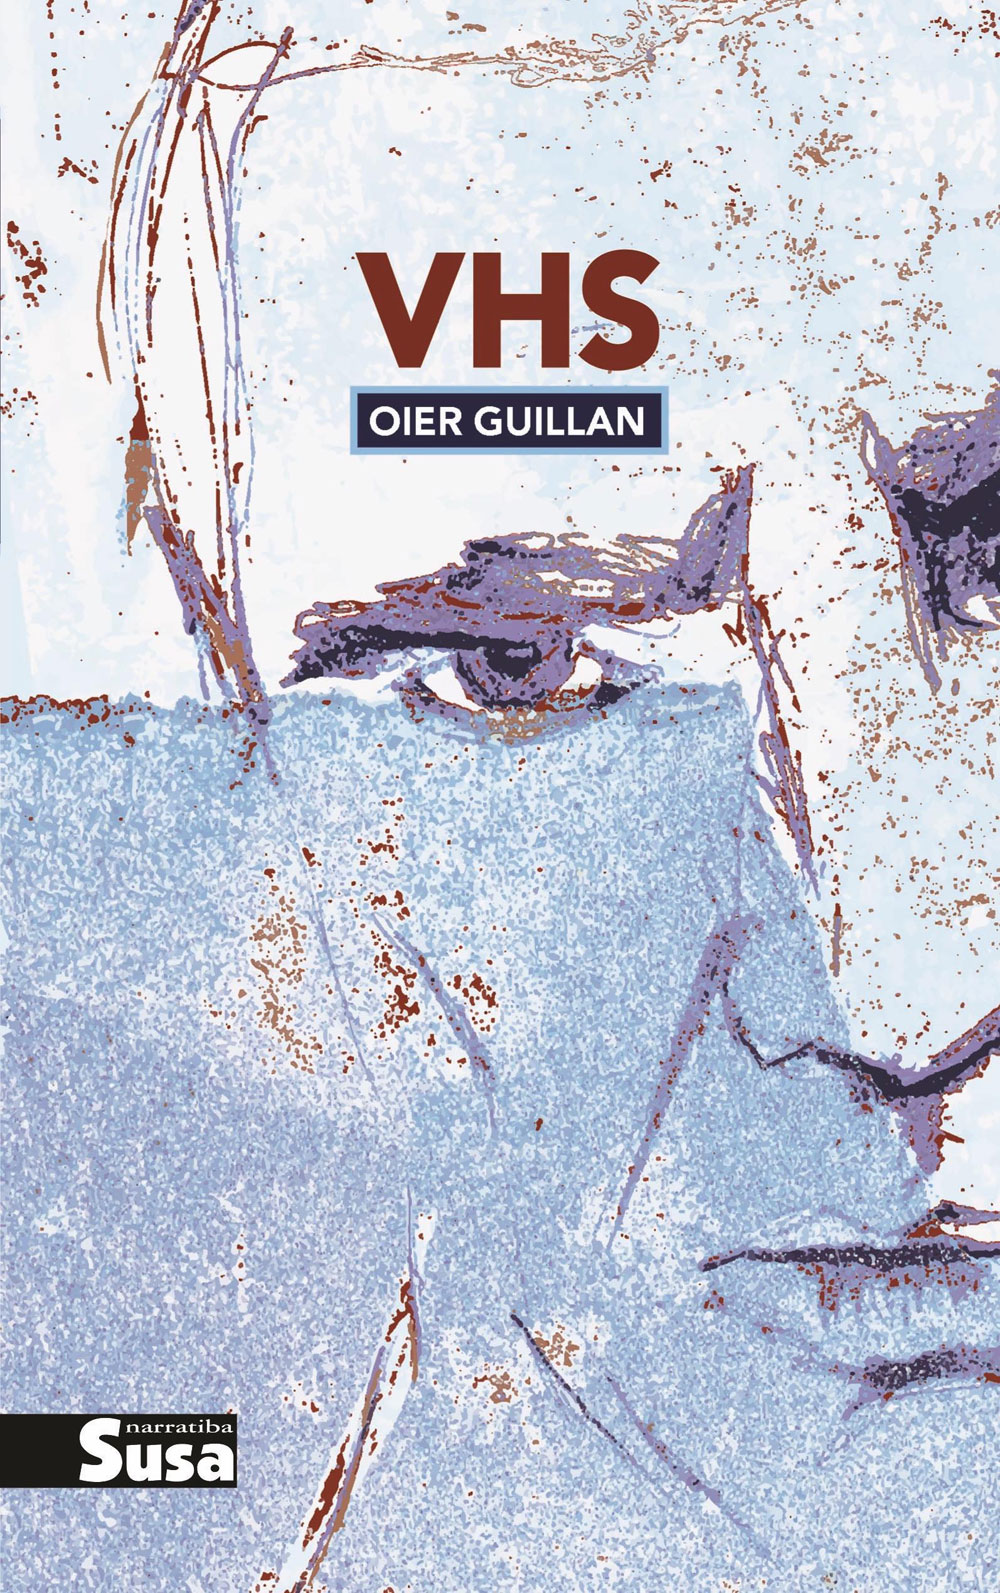 VHS | Oier Guillan | Susa, 2020.